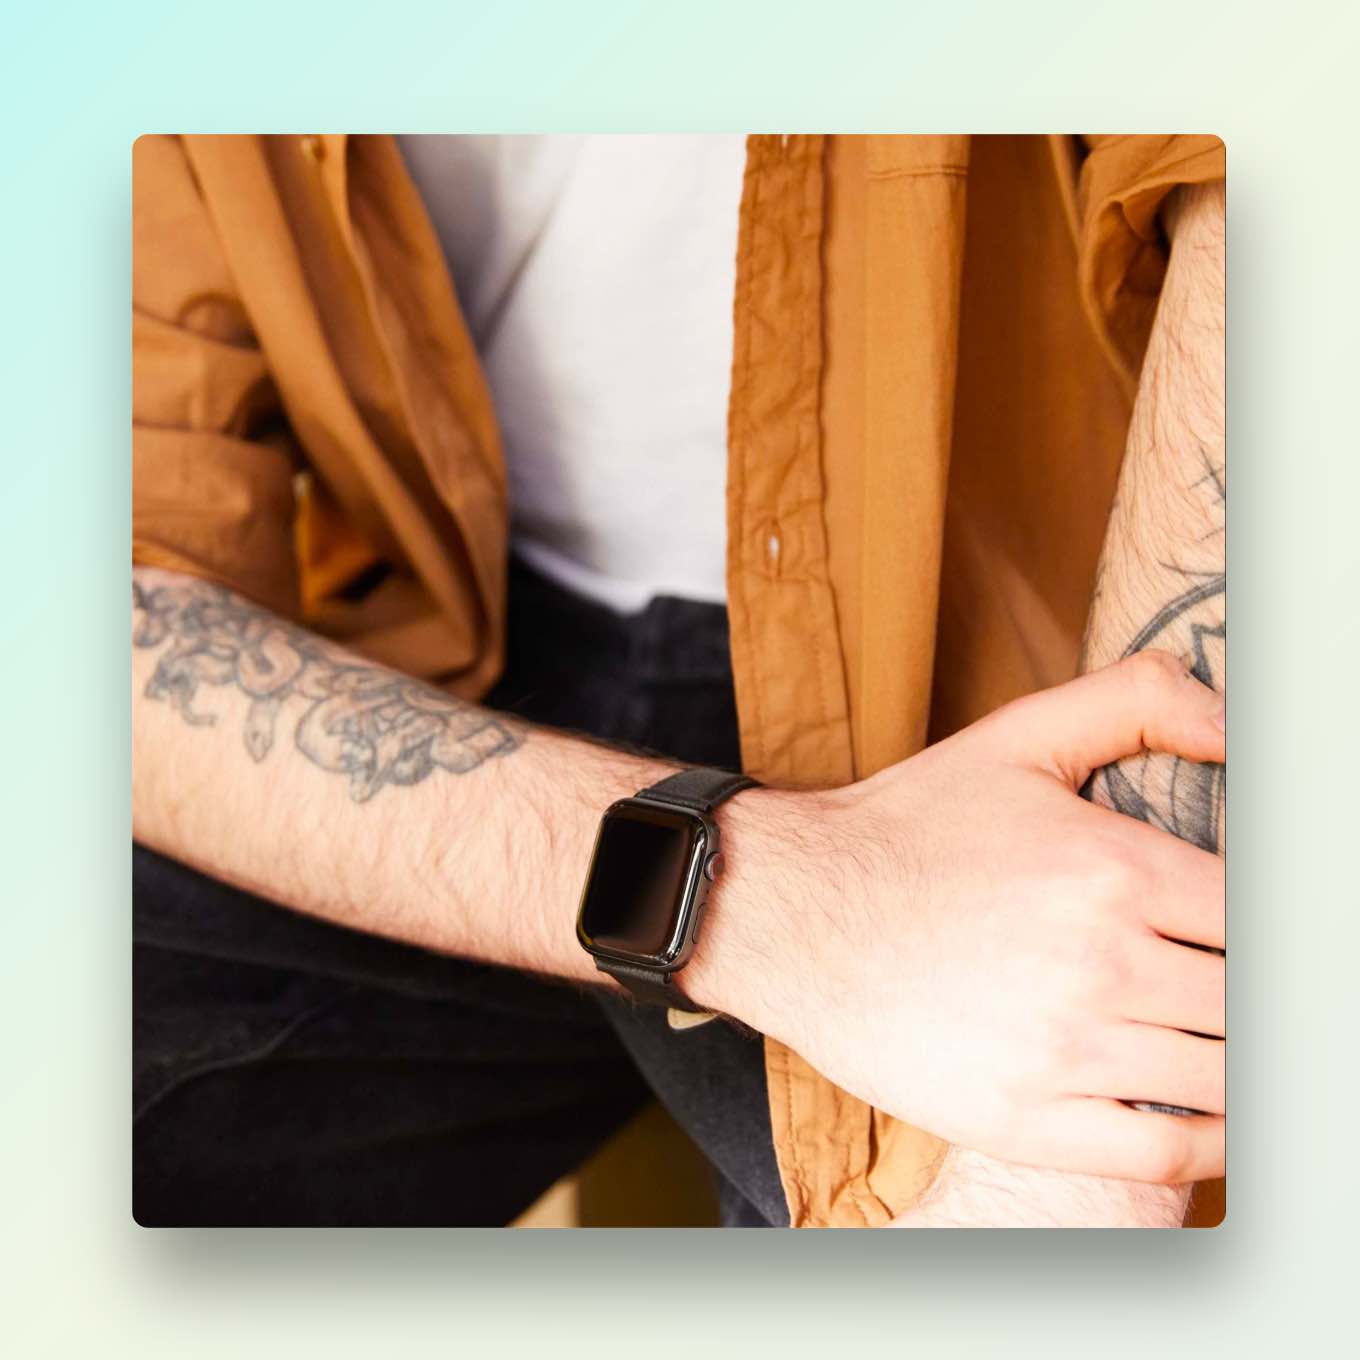 Getatoeëerde persoon die een Apple Watch draagt met een bandje gemaakt van veganistisch appelleer